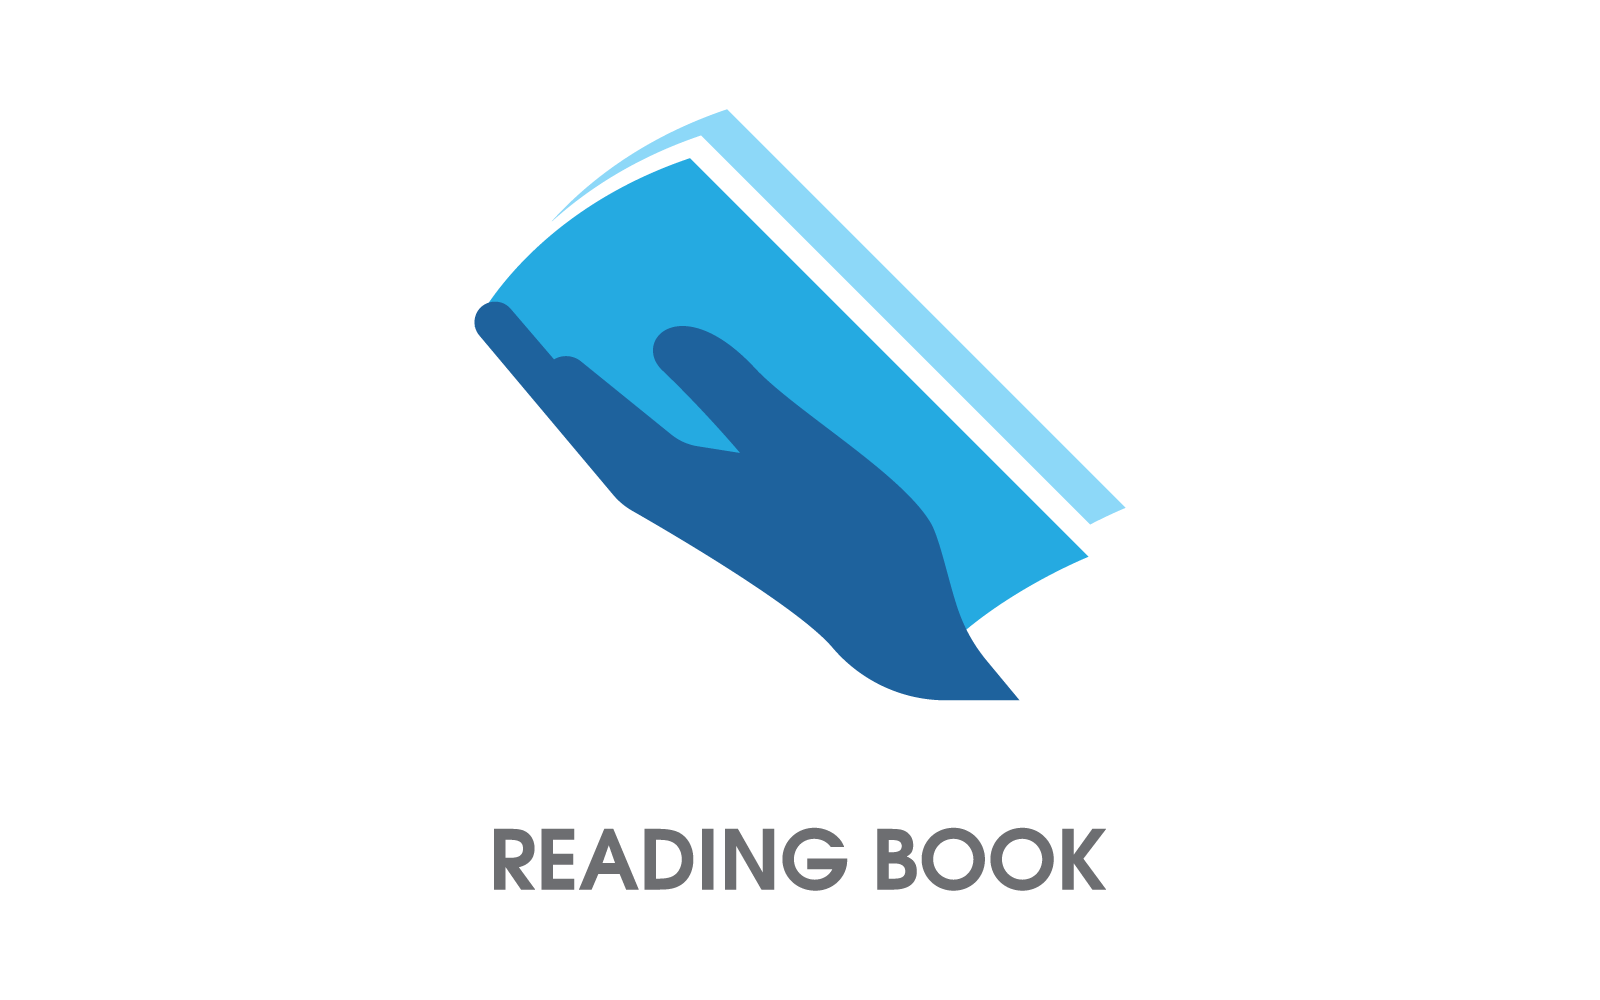 Reading Book, education Logo Template vector design